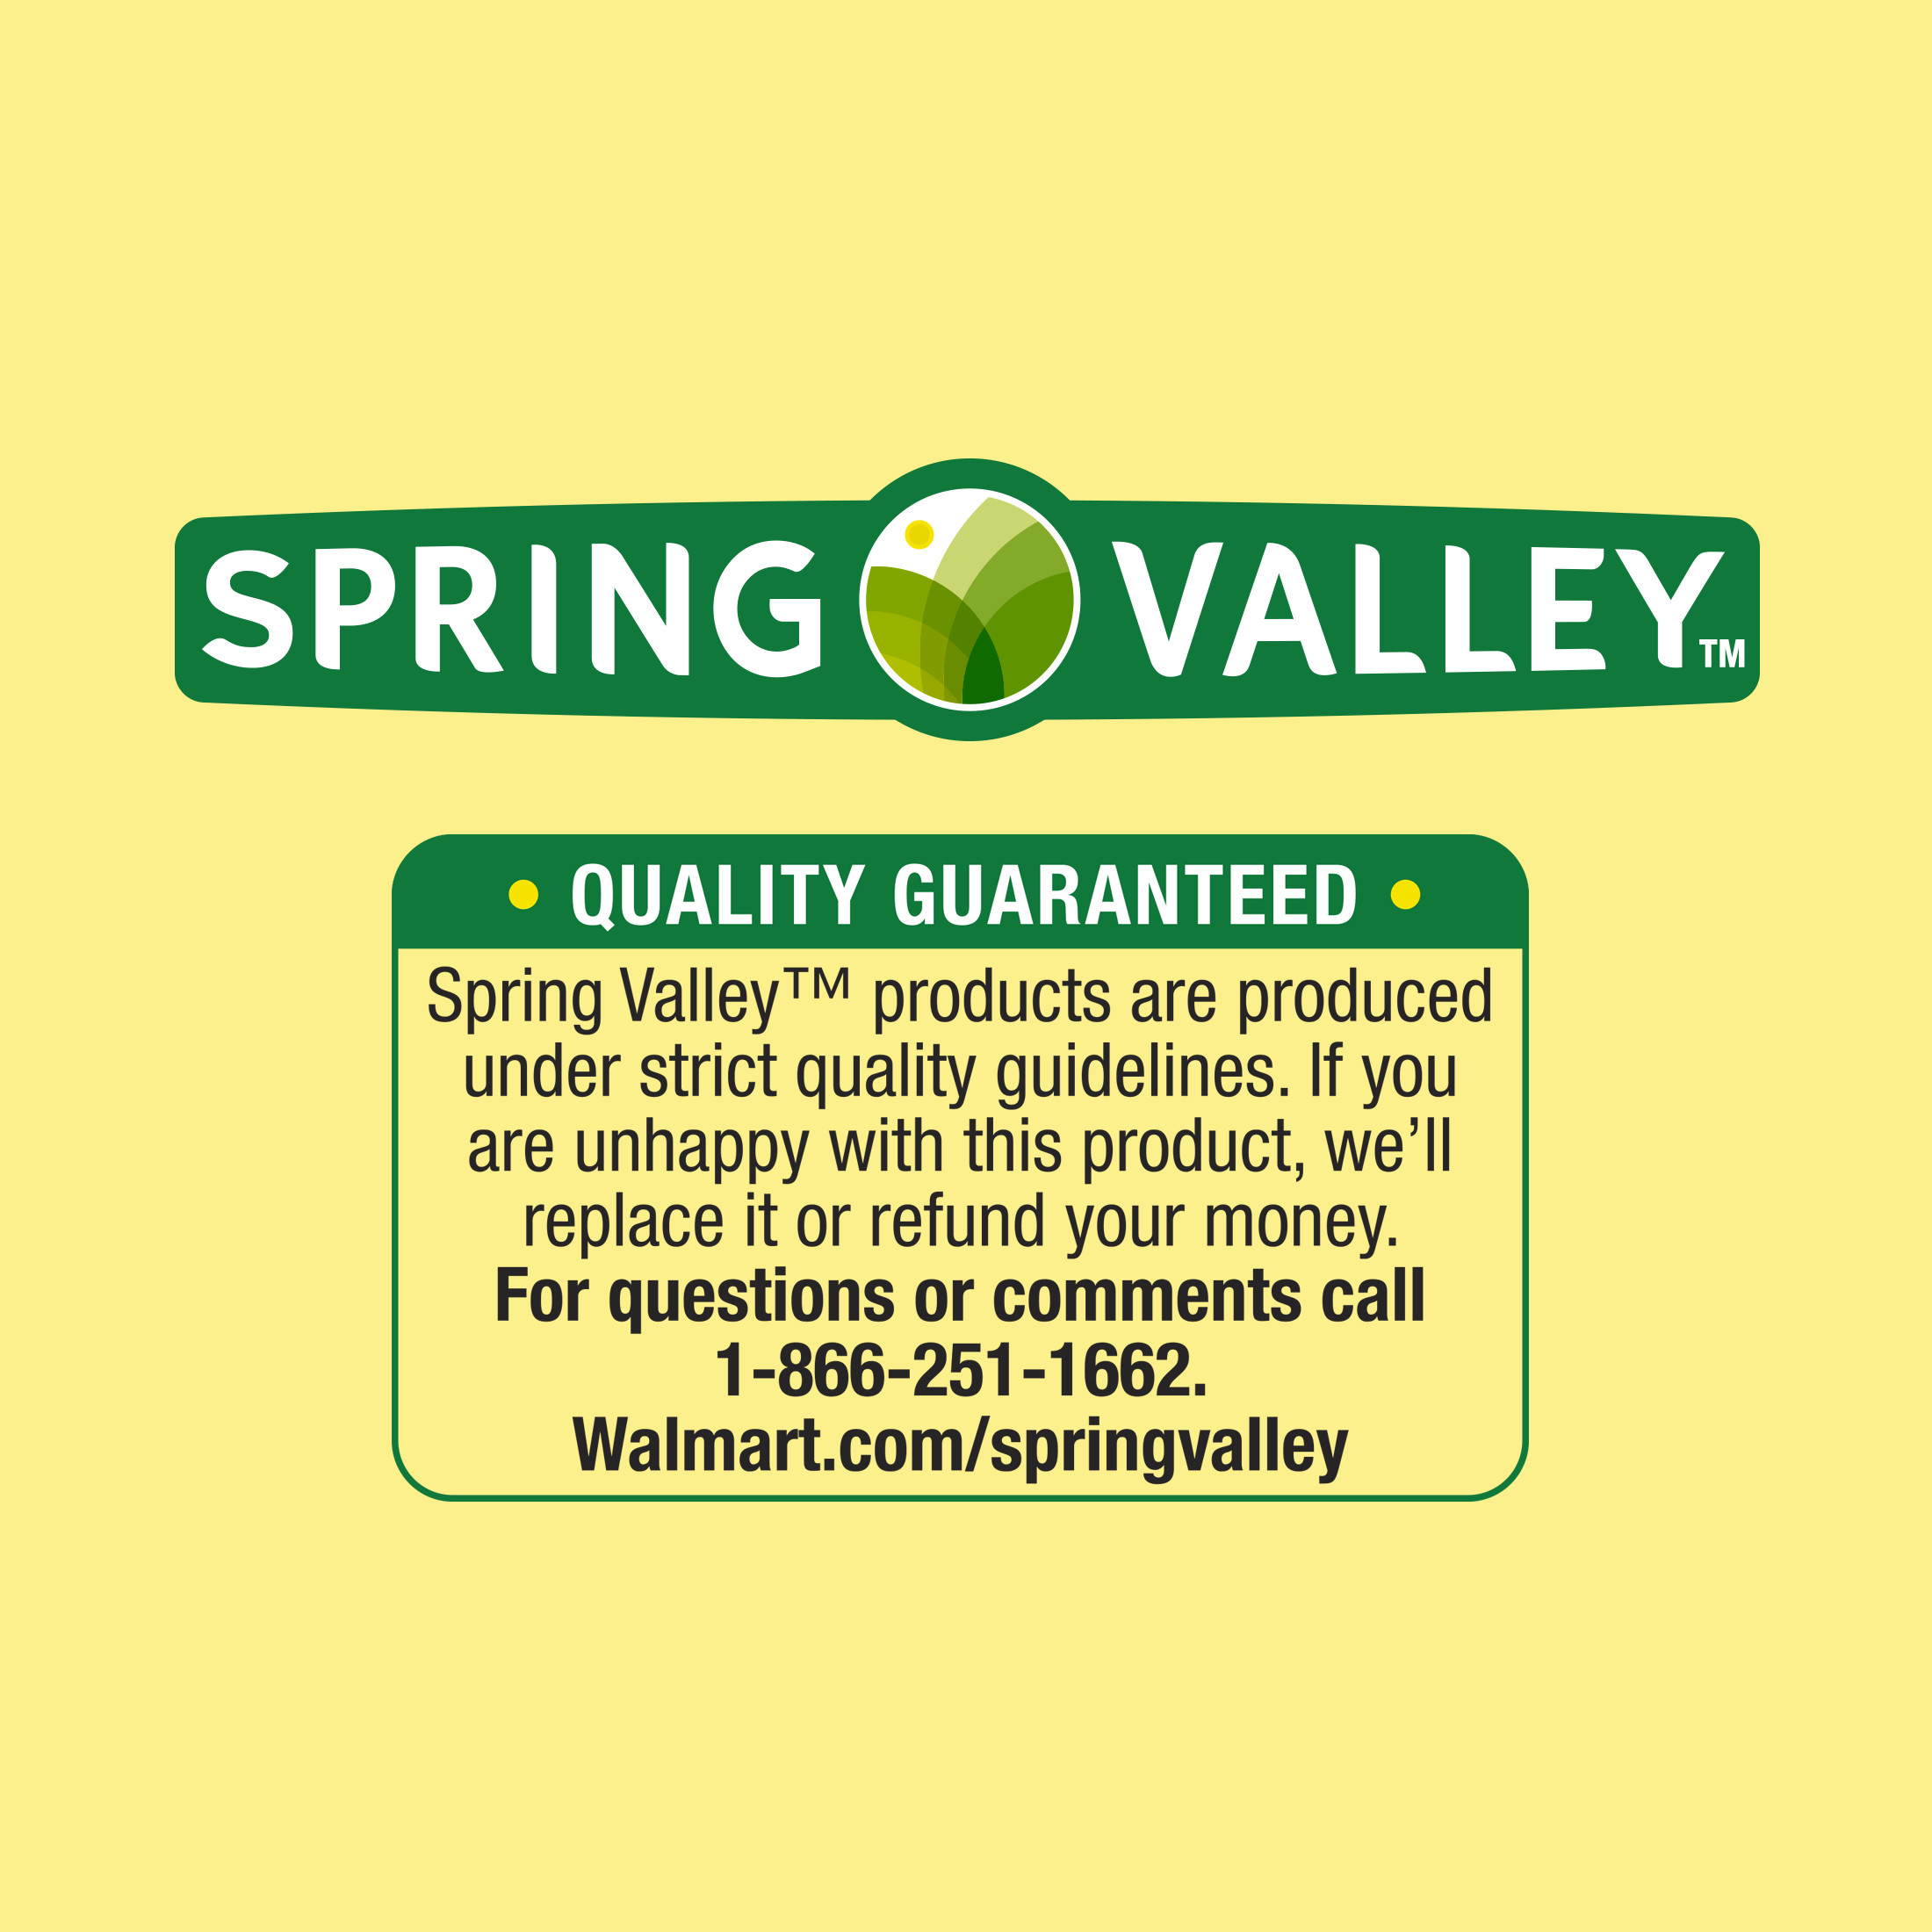 spring valley brand